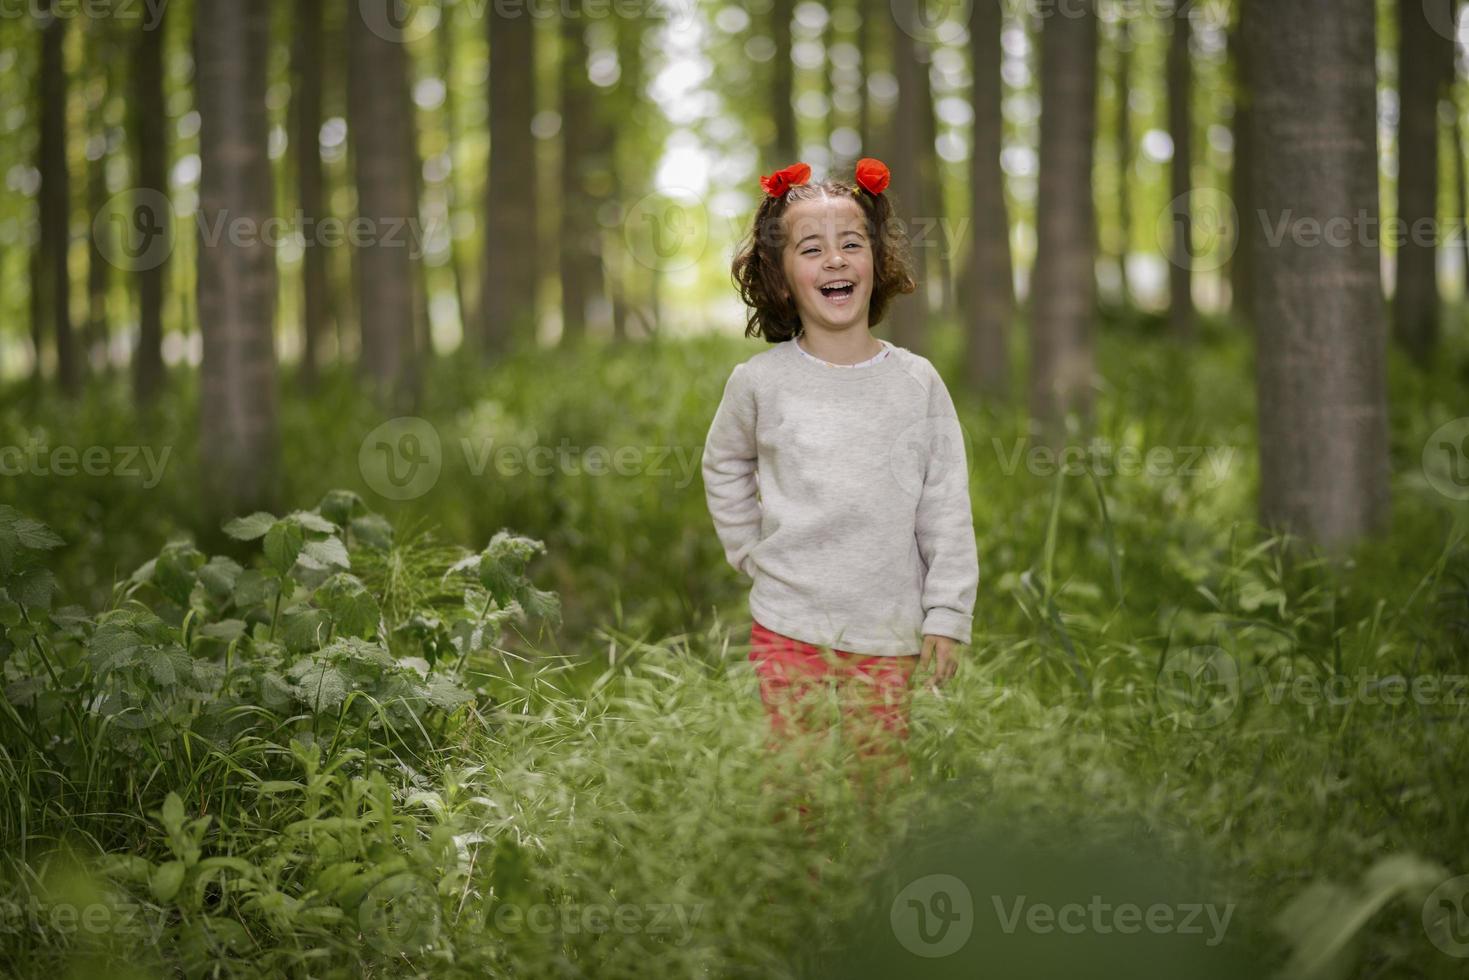 süßes kleines Mädchen, das Spaß in einem Pappelwald hat foto